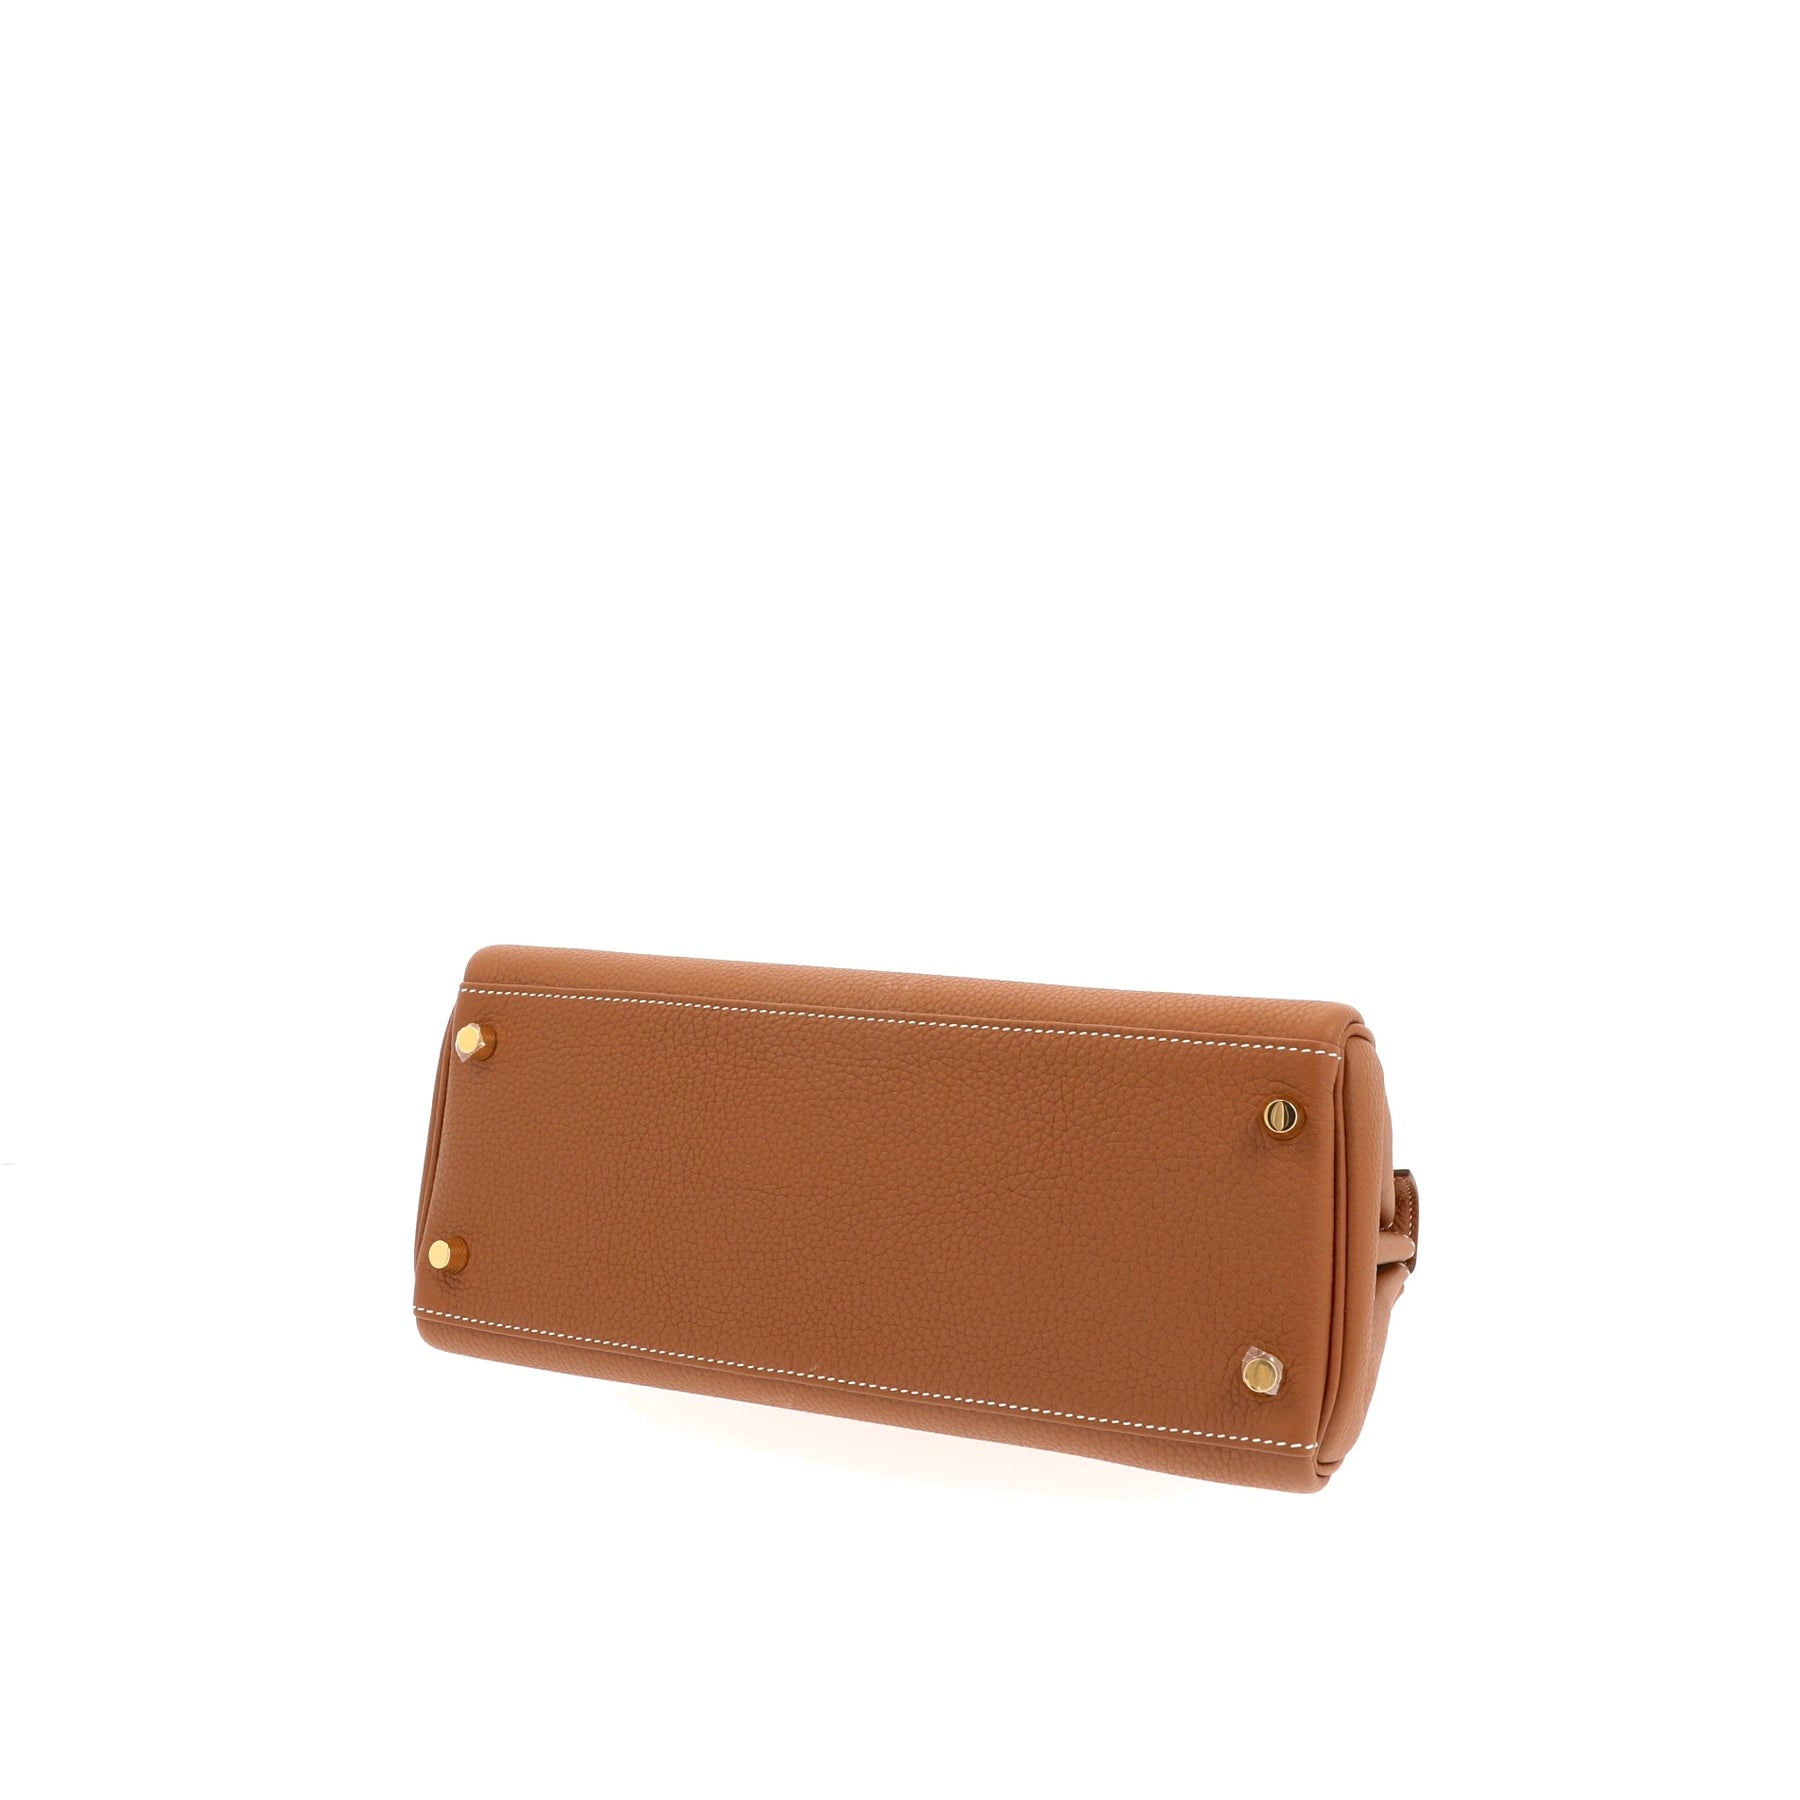 Hermes Kelly 25cm Bag Togo Calfskin Leather Gold Hardware, CK63 - SYMode Vip